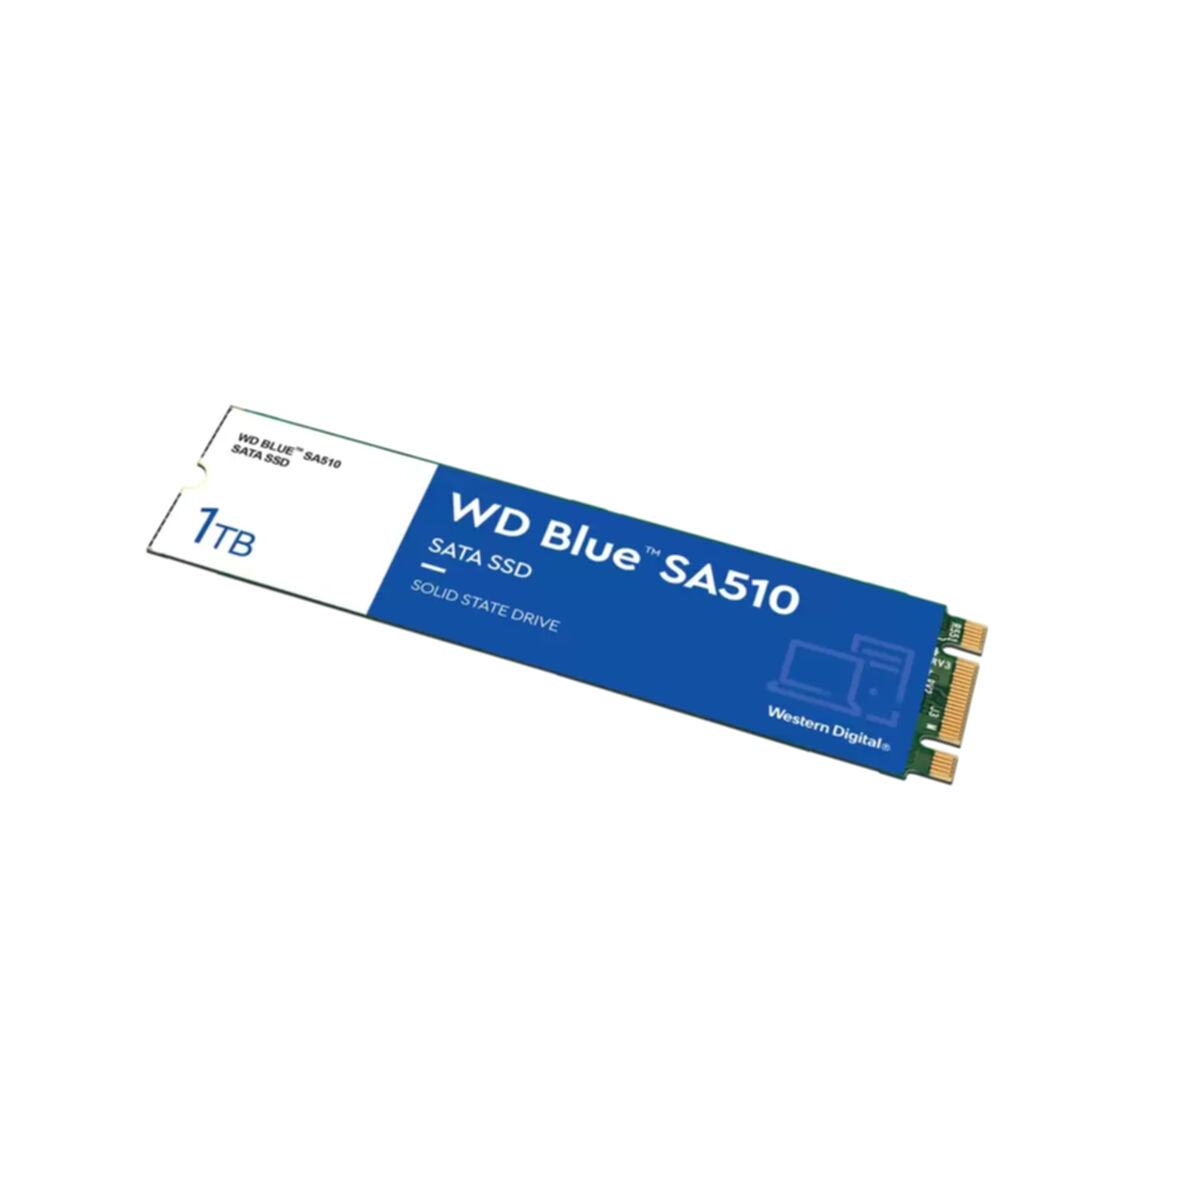 WESTERN SSD, 1000 SA510, DIGITAL GB, intern